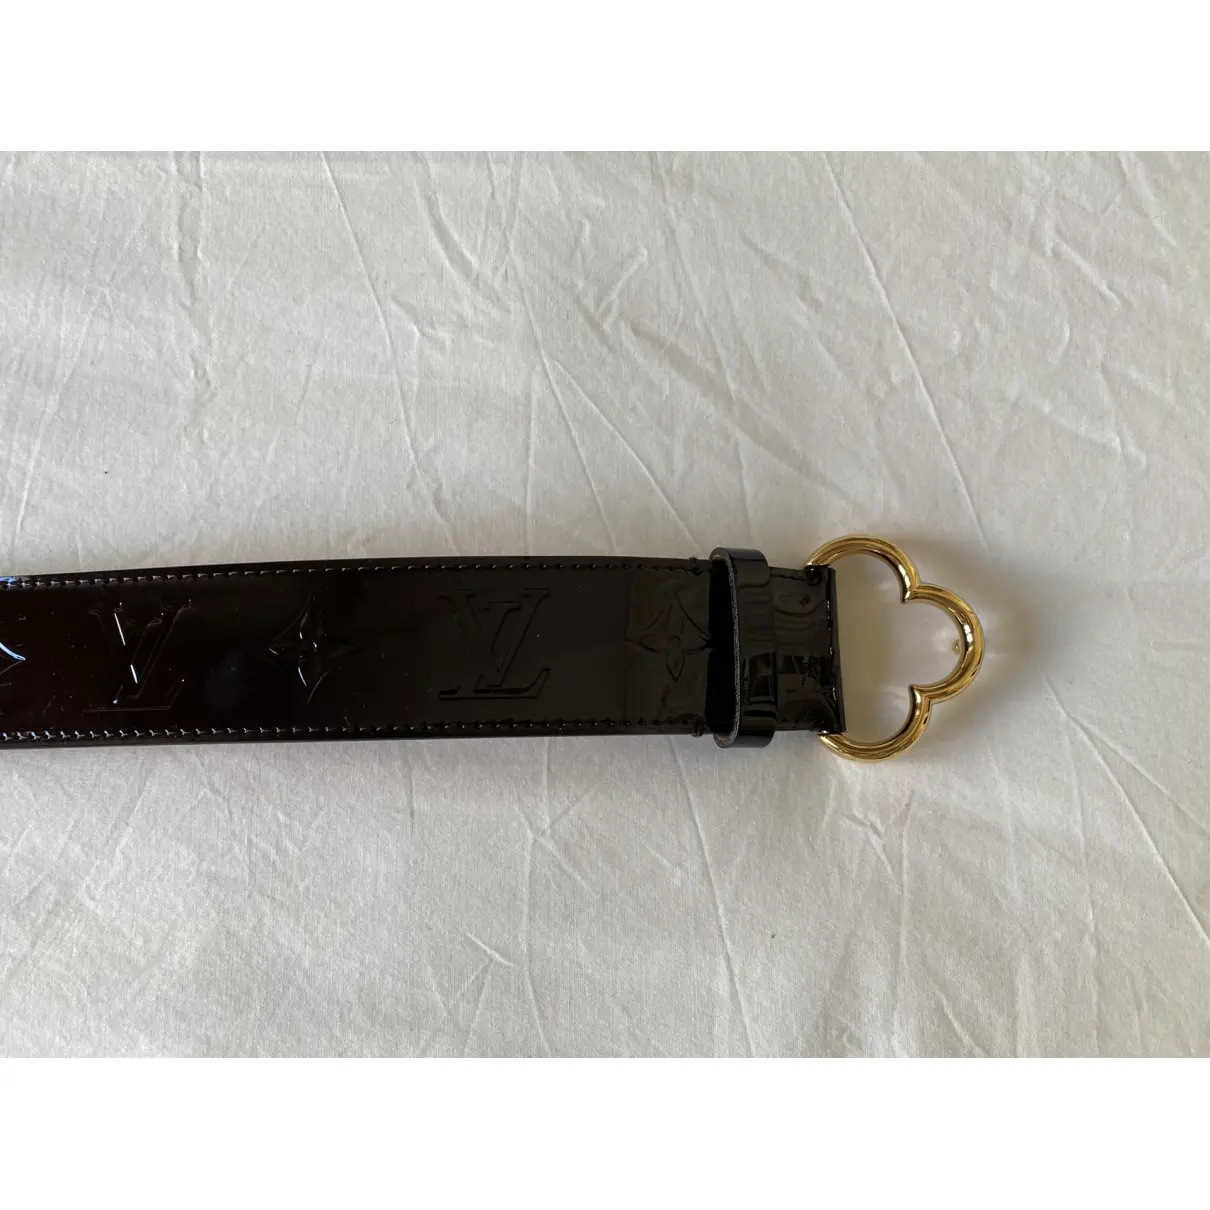 Buy Louis Vuitton Patent leather belt online